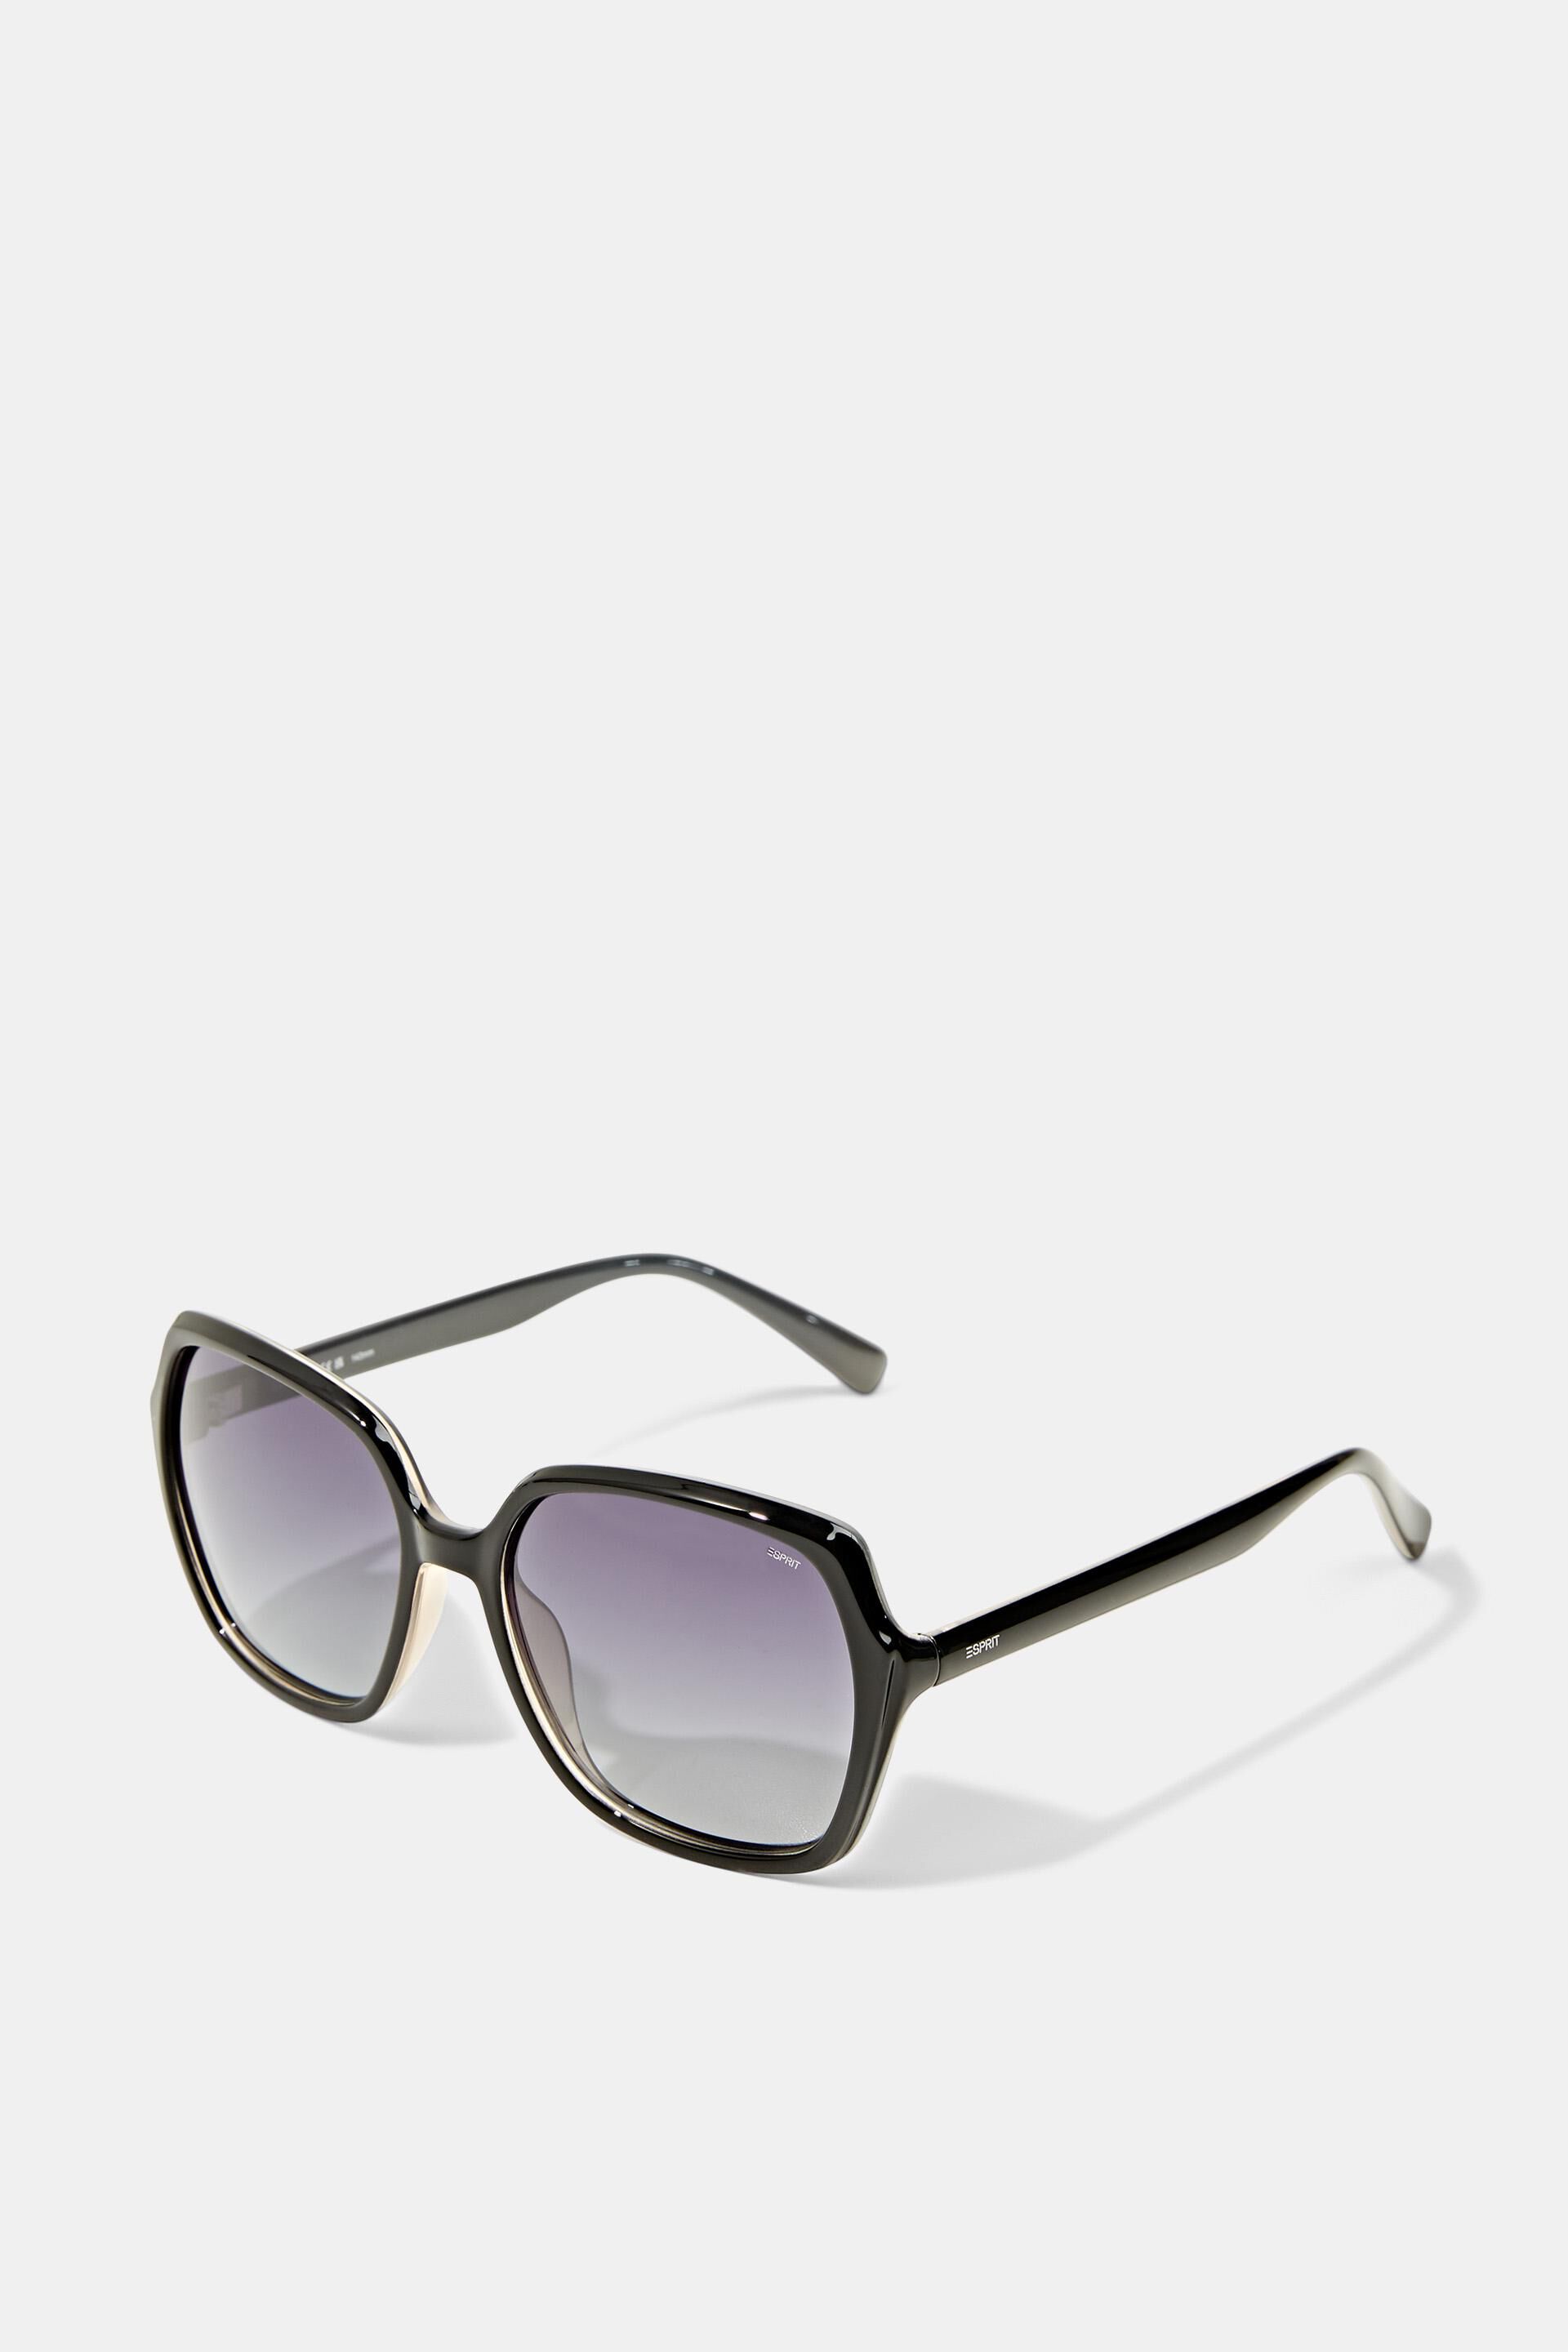 Esprit Gläsern großen mit Statement-Sonnenbrille